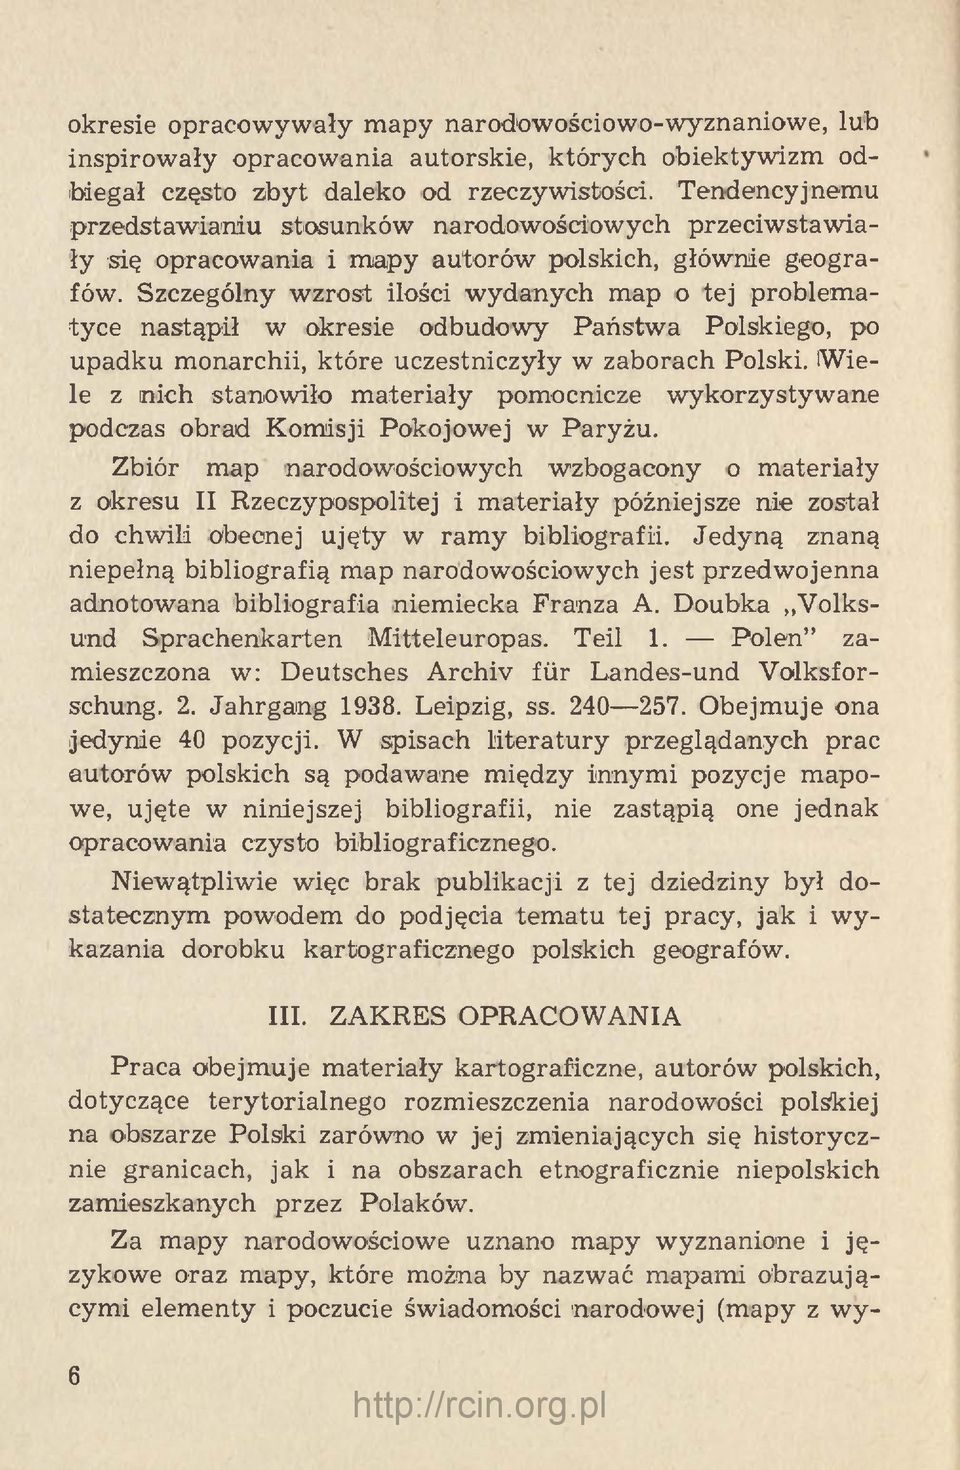 Szczególny wzrost ilości wydanych map o tej problematyce nastąpił w okresie odbudowy Państwa Polskiego, po upadku monarchii, które uczestniczyły w zaborach Polski.